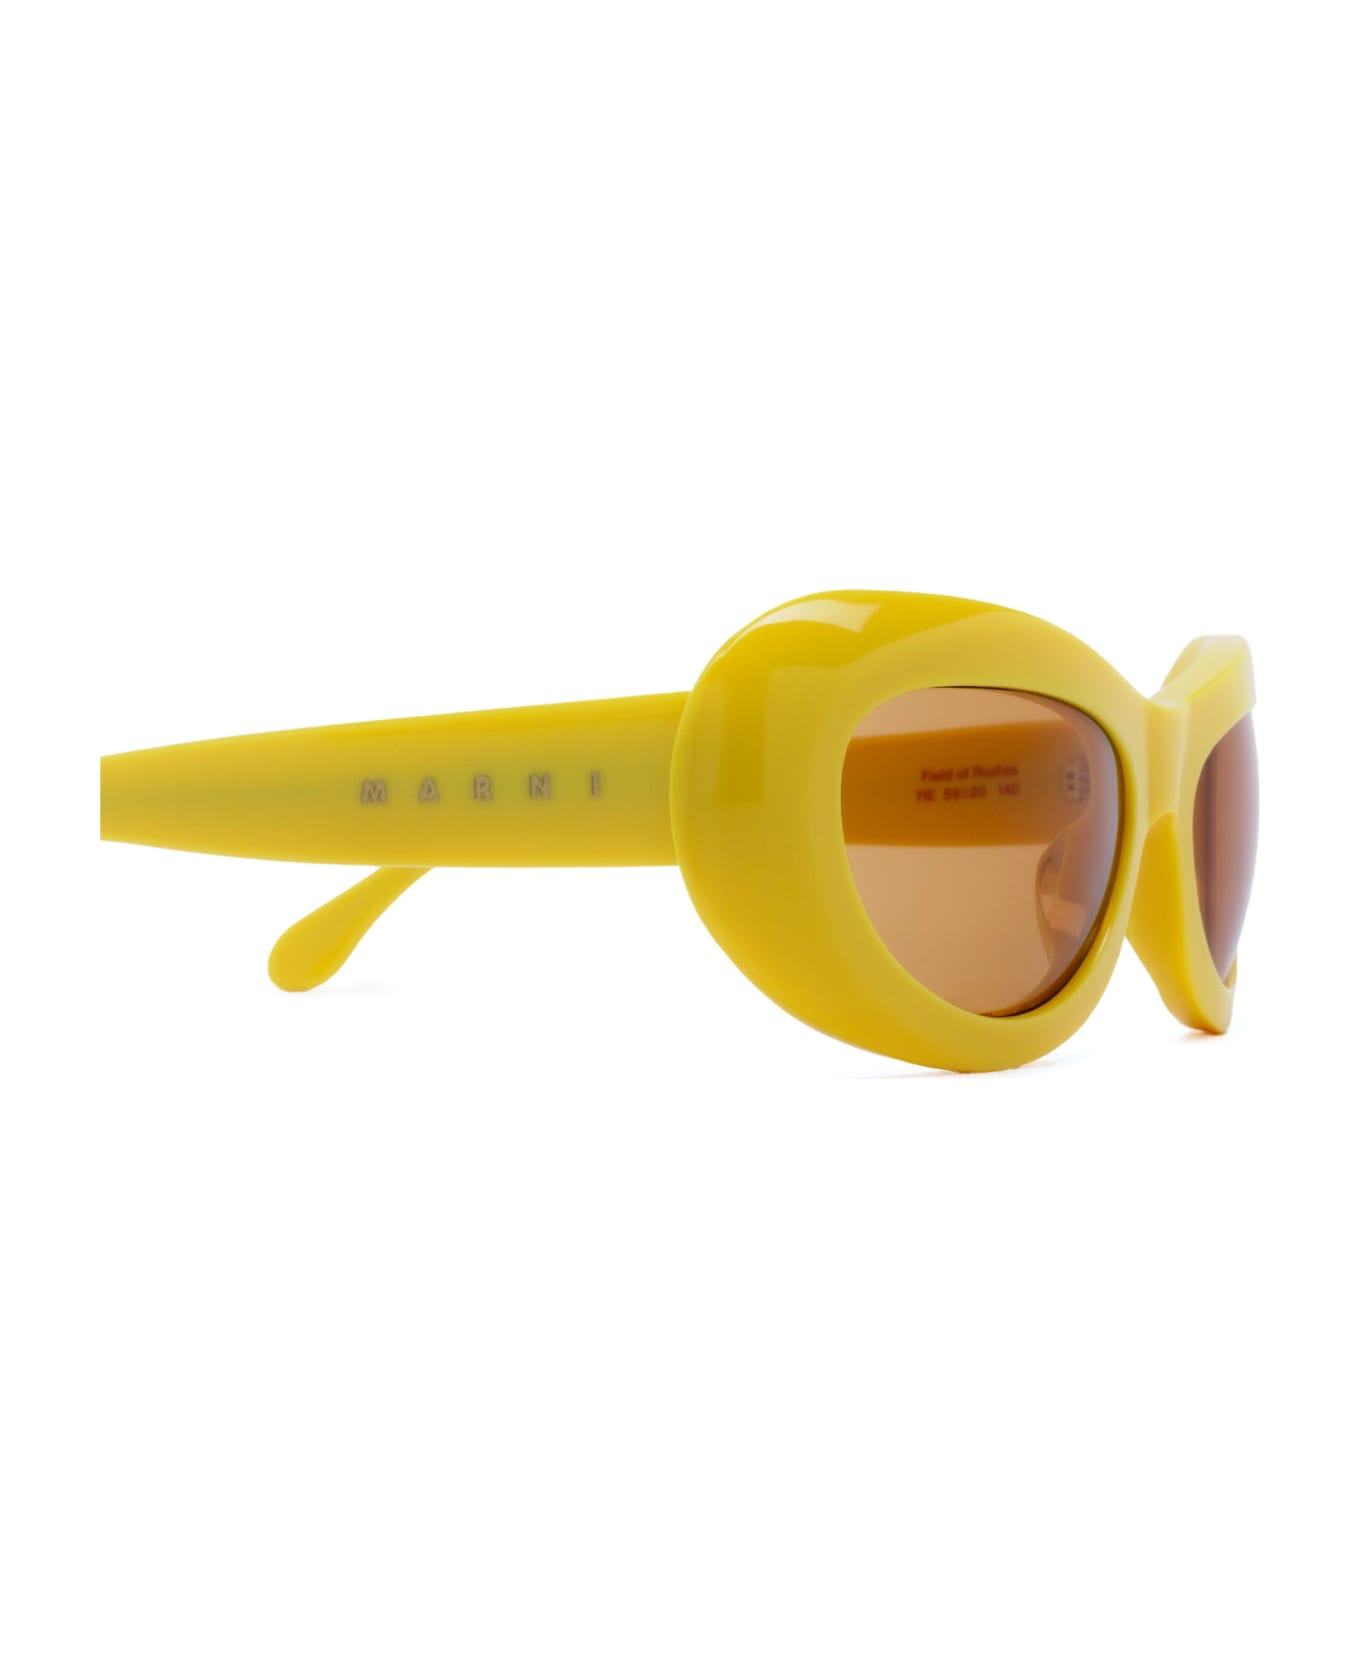 Marni Eyewear Field Of Rushes Yellow Sunglasses - Yellow